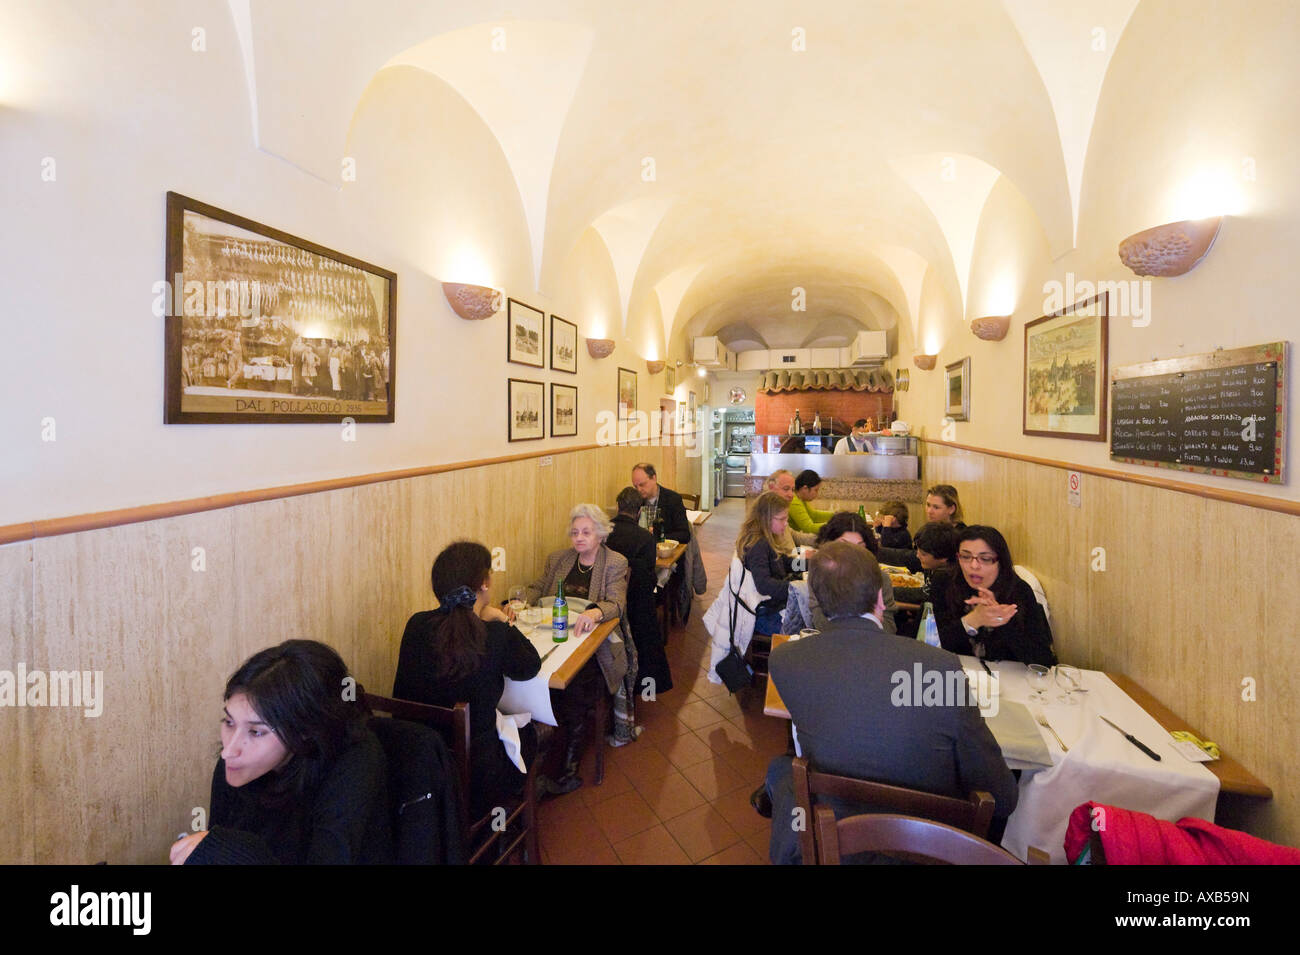 Interior of traditional restaurant near the Piazza del Popolo, Historic Centre, Rome, Italy Stock Photo